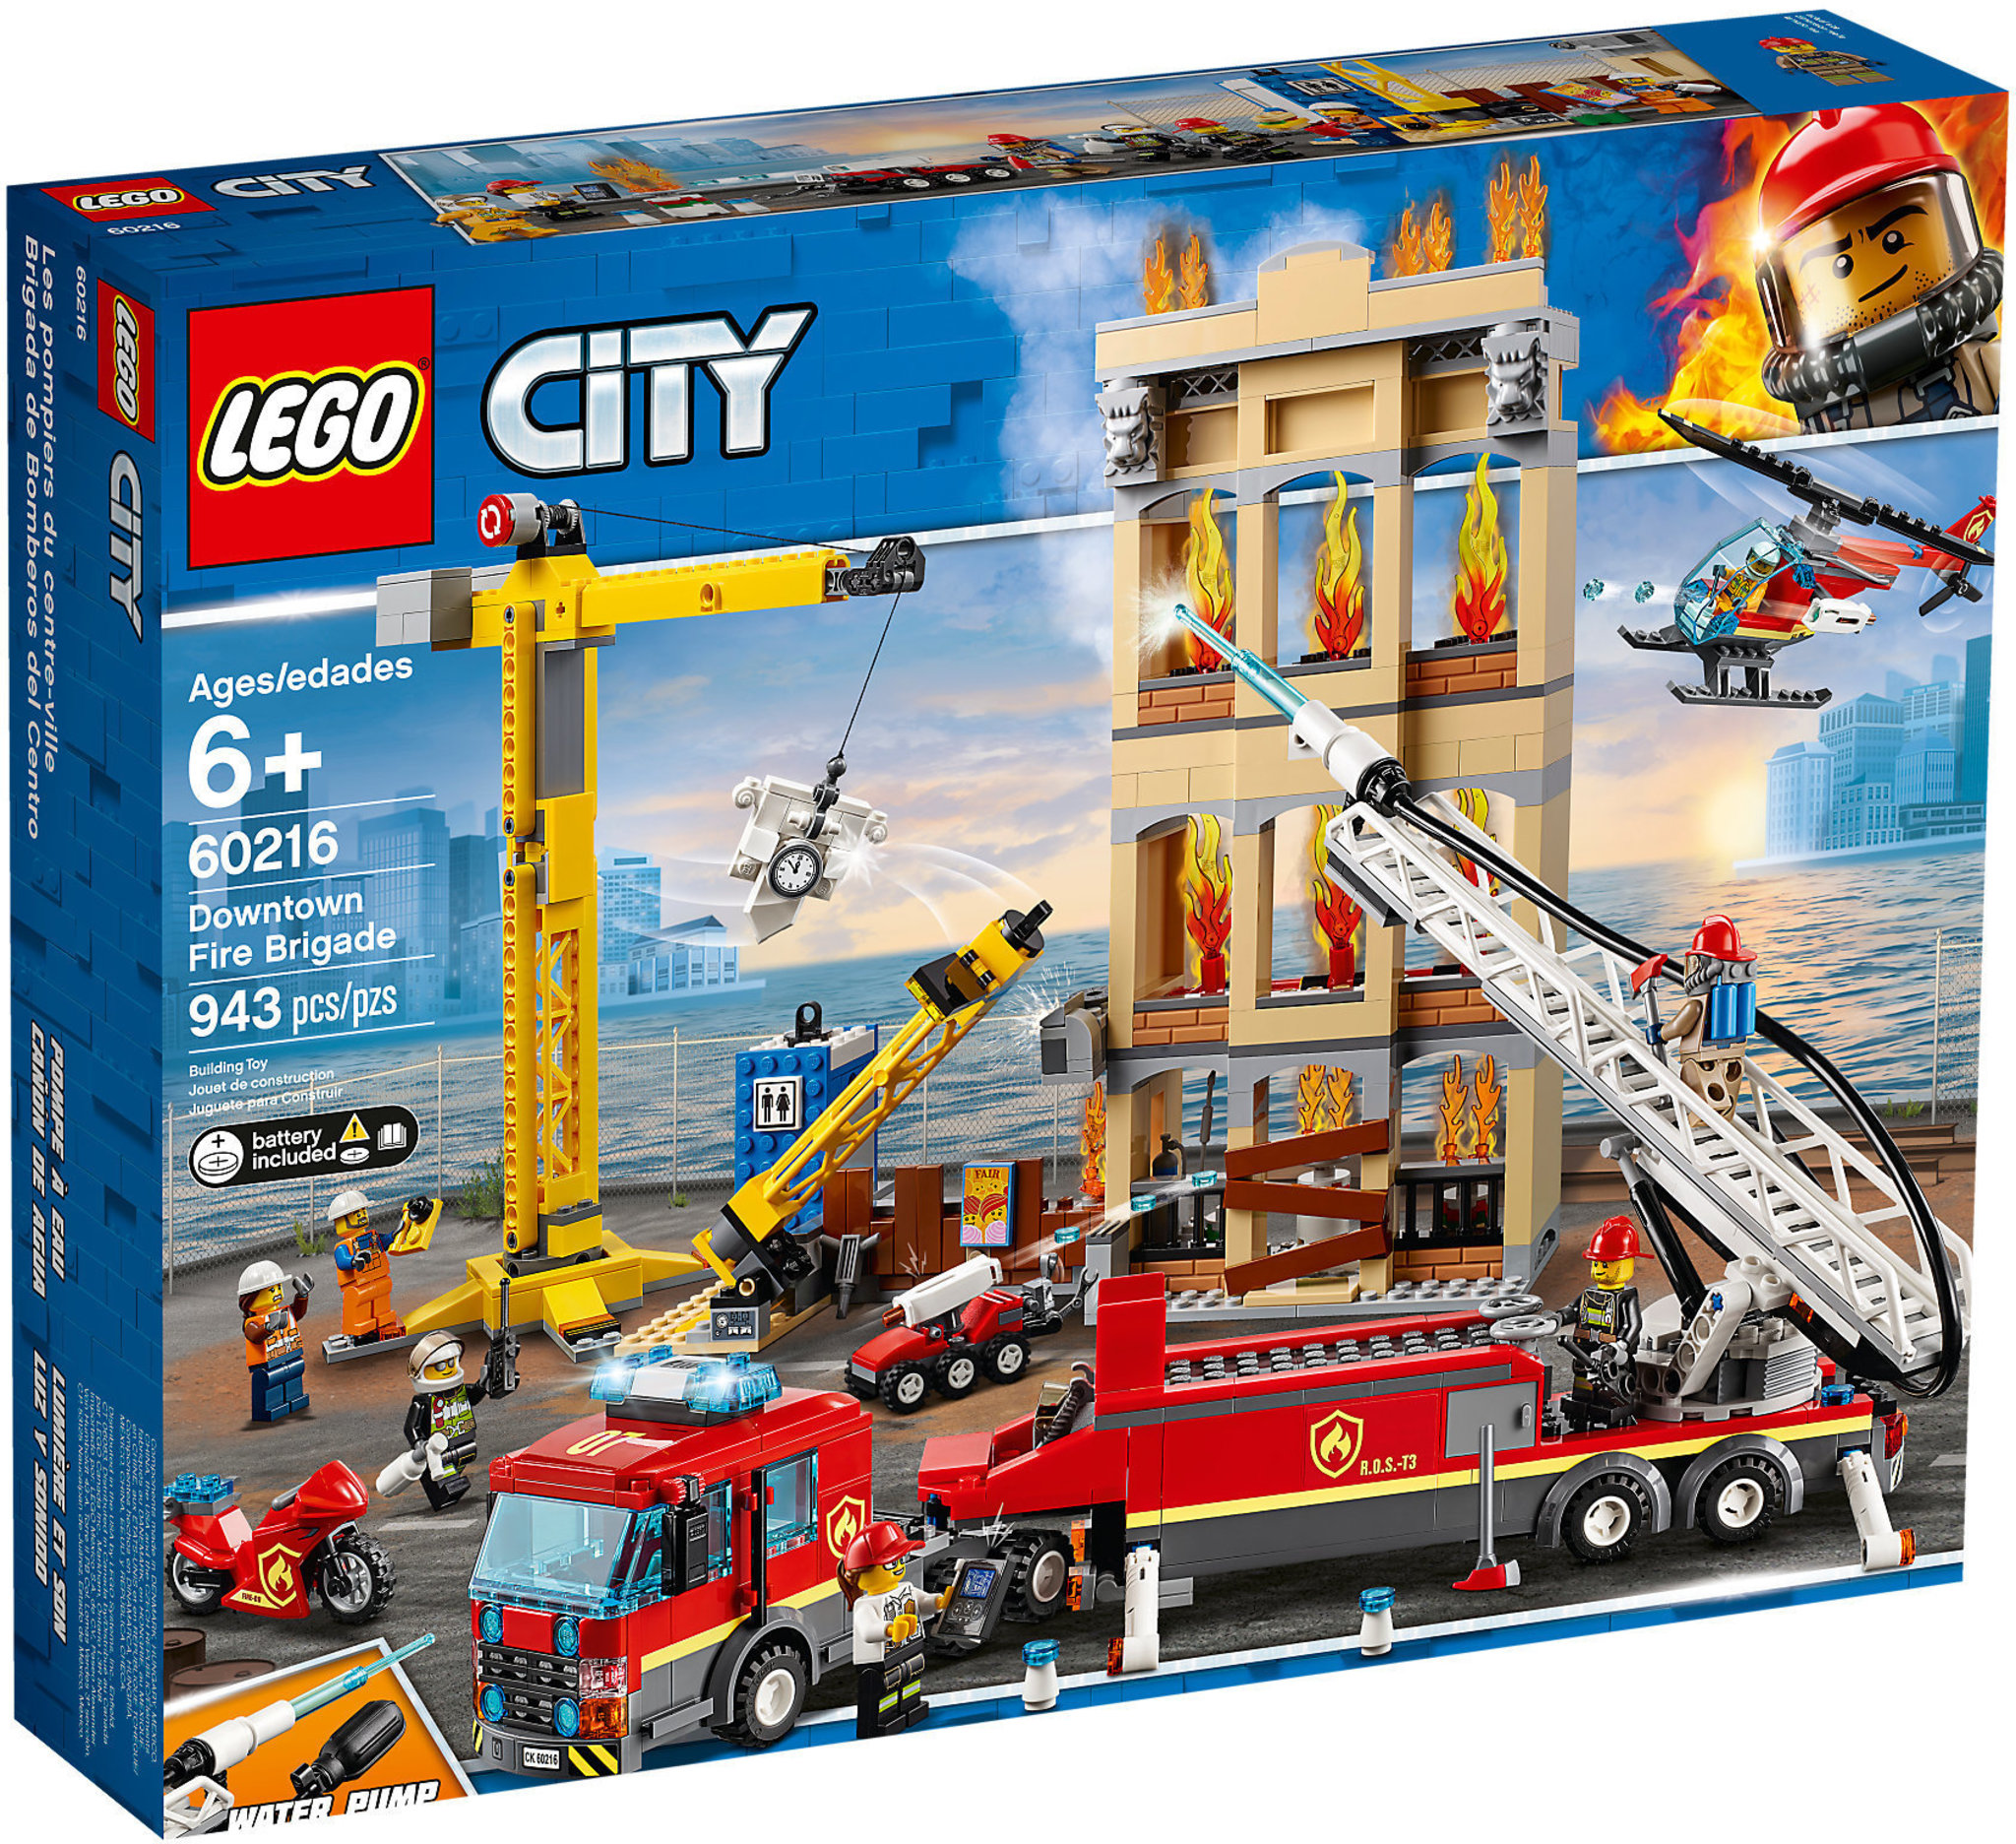 LEGO City 60288 Le transport du buggy de course, Jouet Camion Voiture